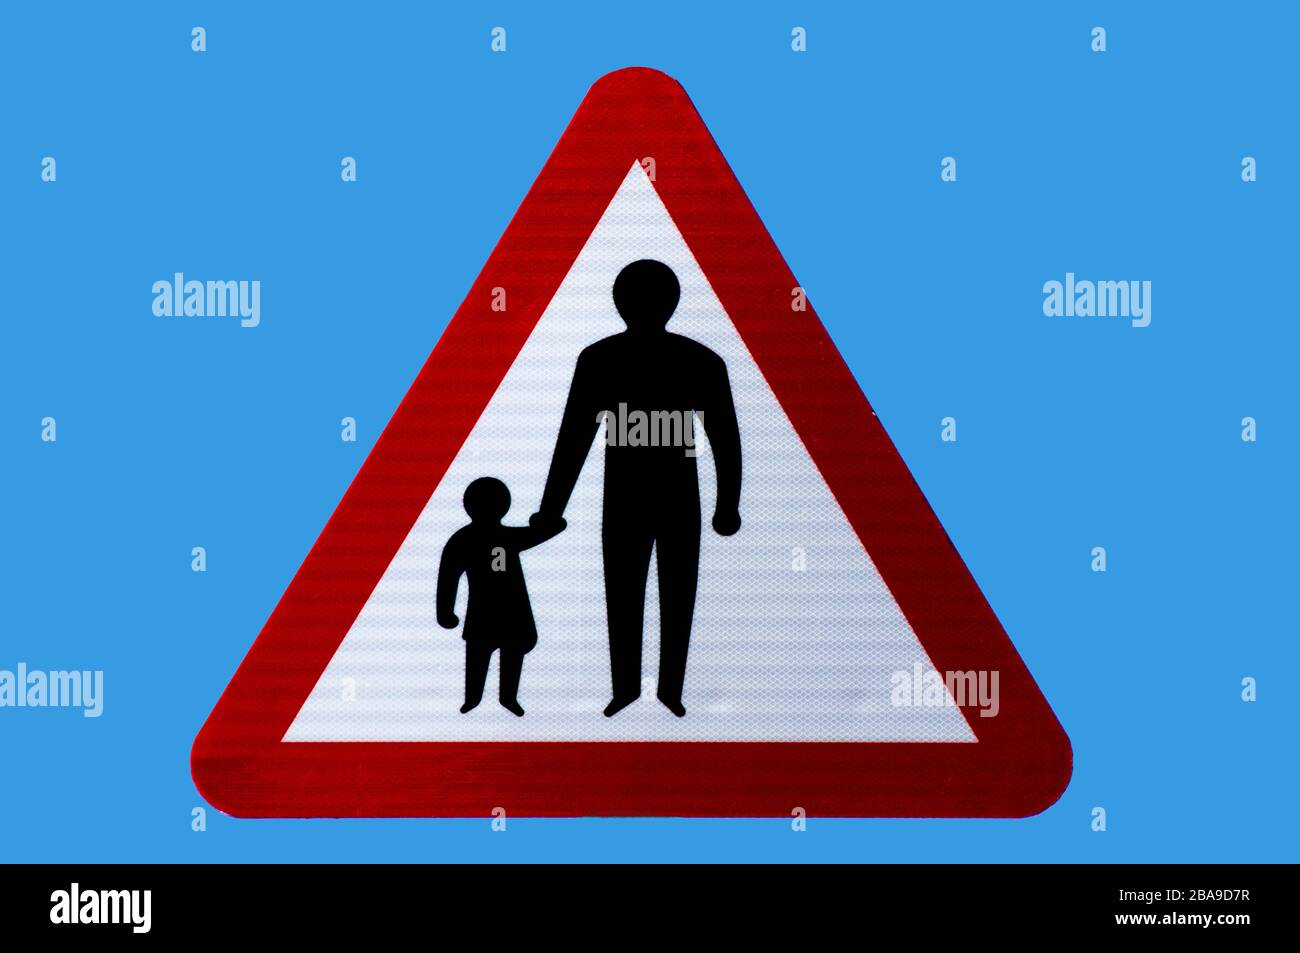 Segnale di avvertenza triangolare per la sicurezza stradale per i pedoni su strada o senza pedane. Isolato. Foto Stock